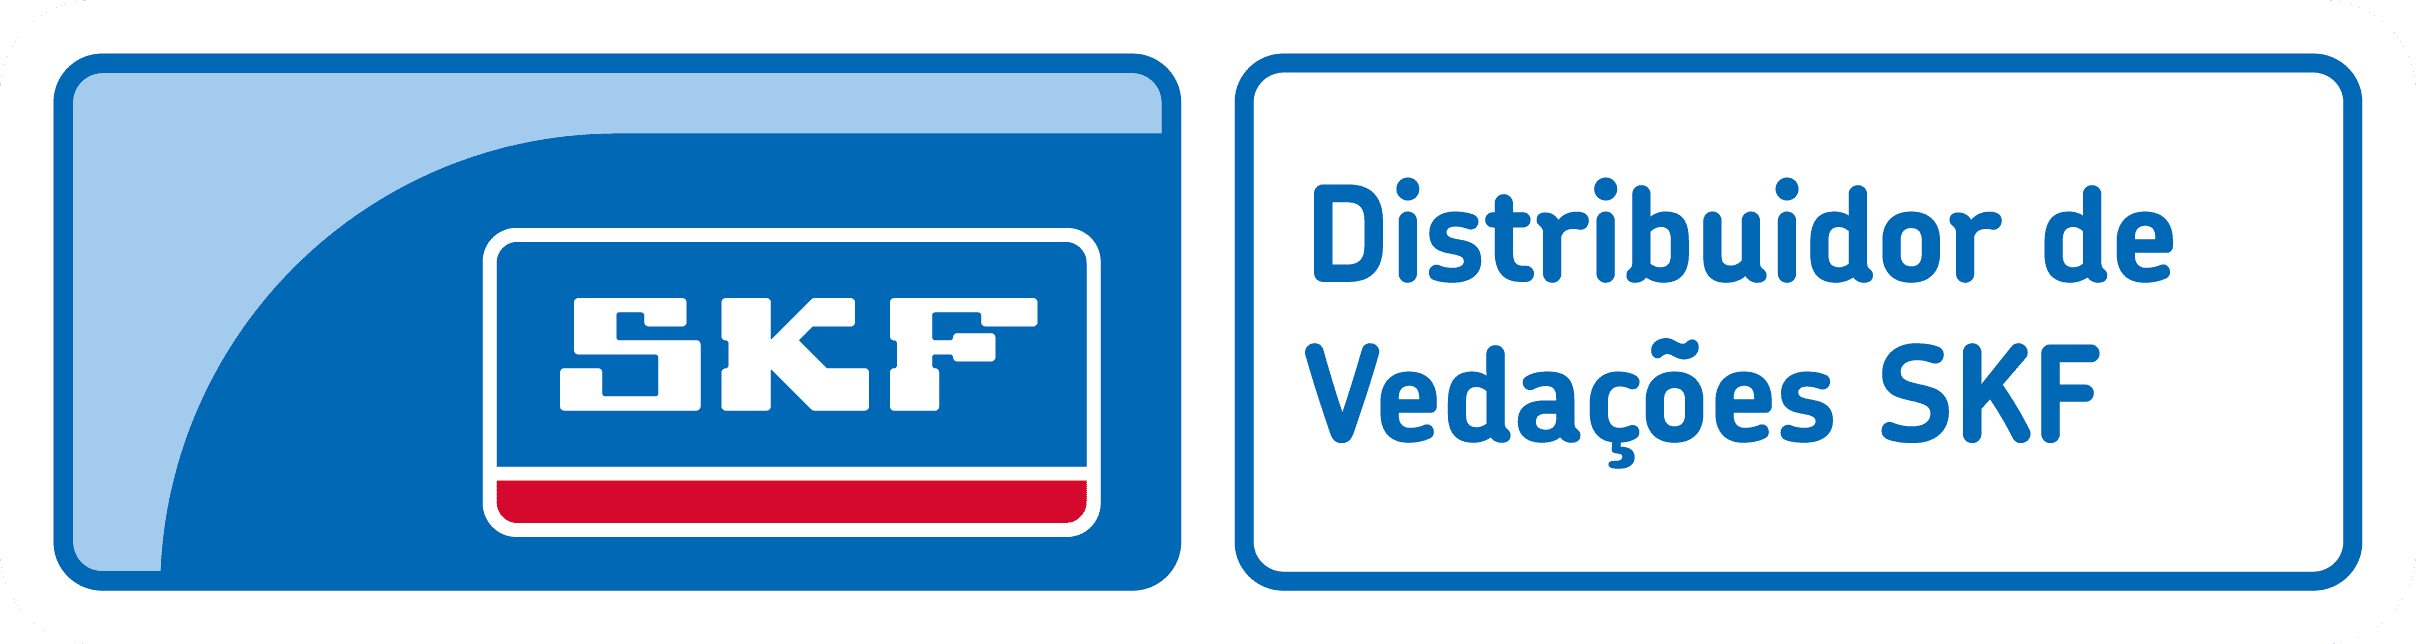 Distribuidor de Vedações SKF